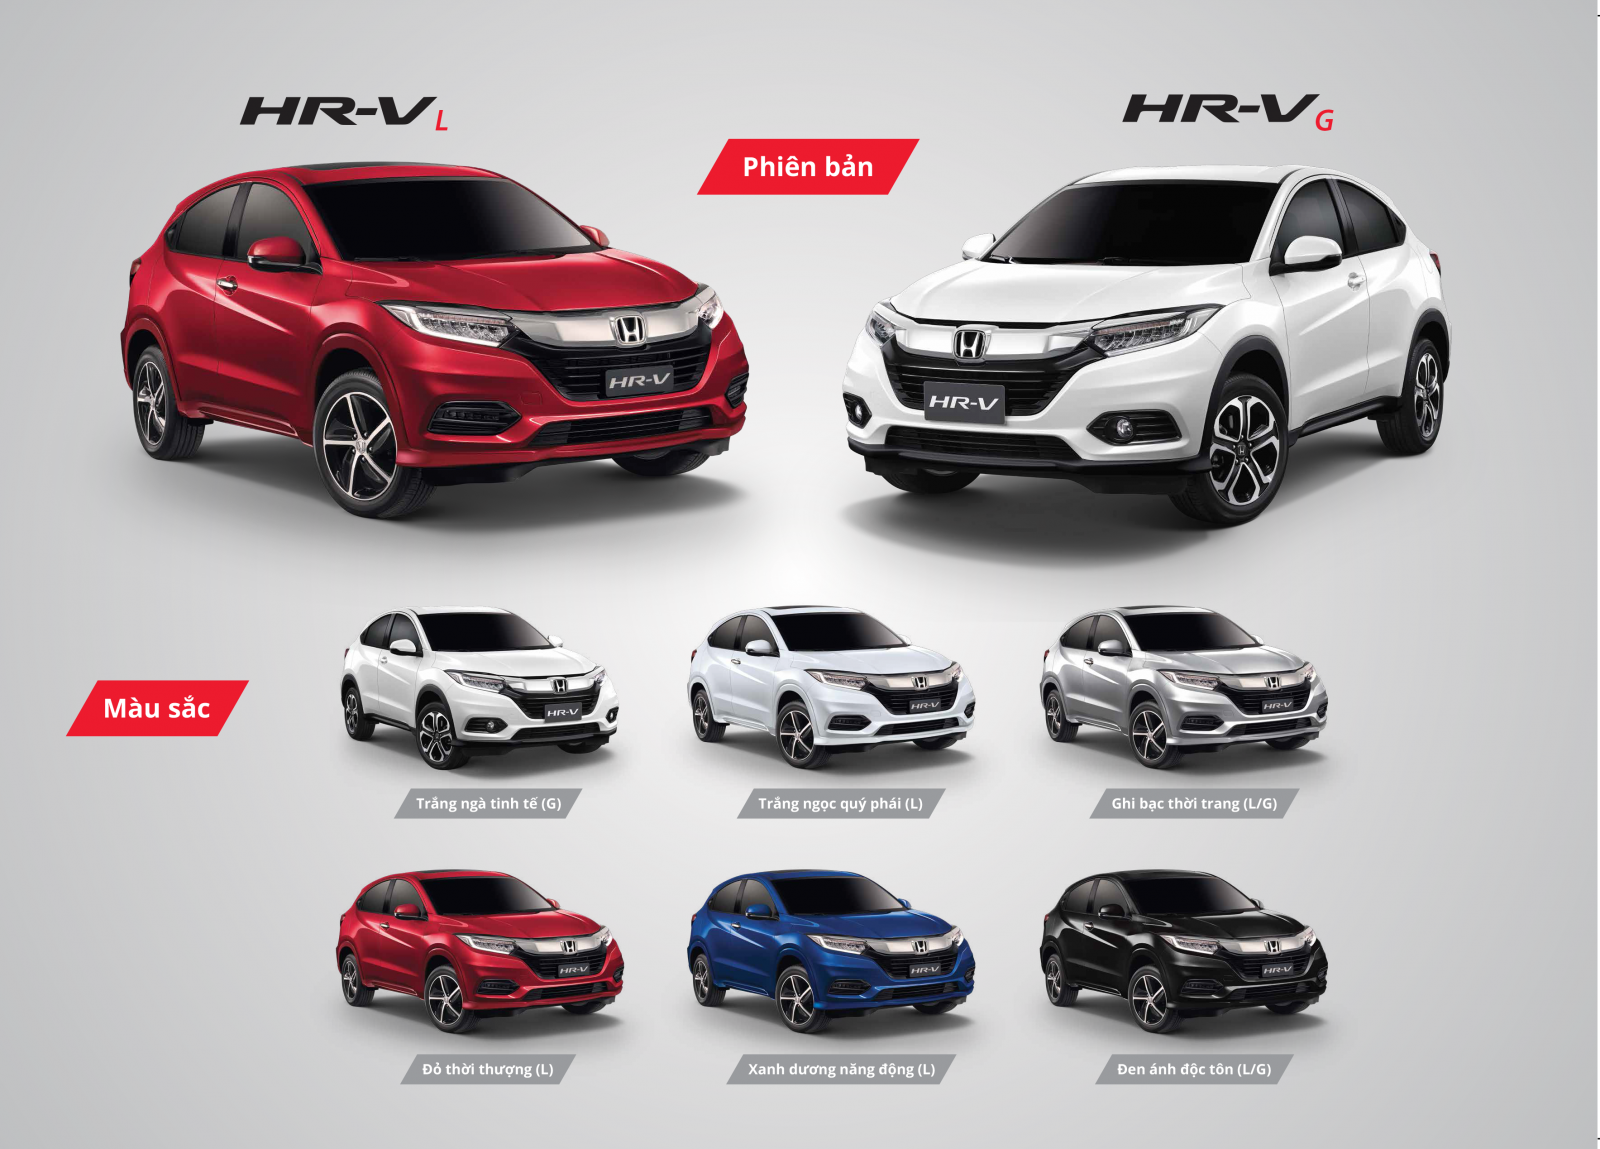 Những lựa chọn màu sắc khi mua Honda HR-V